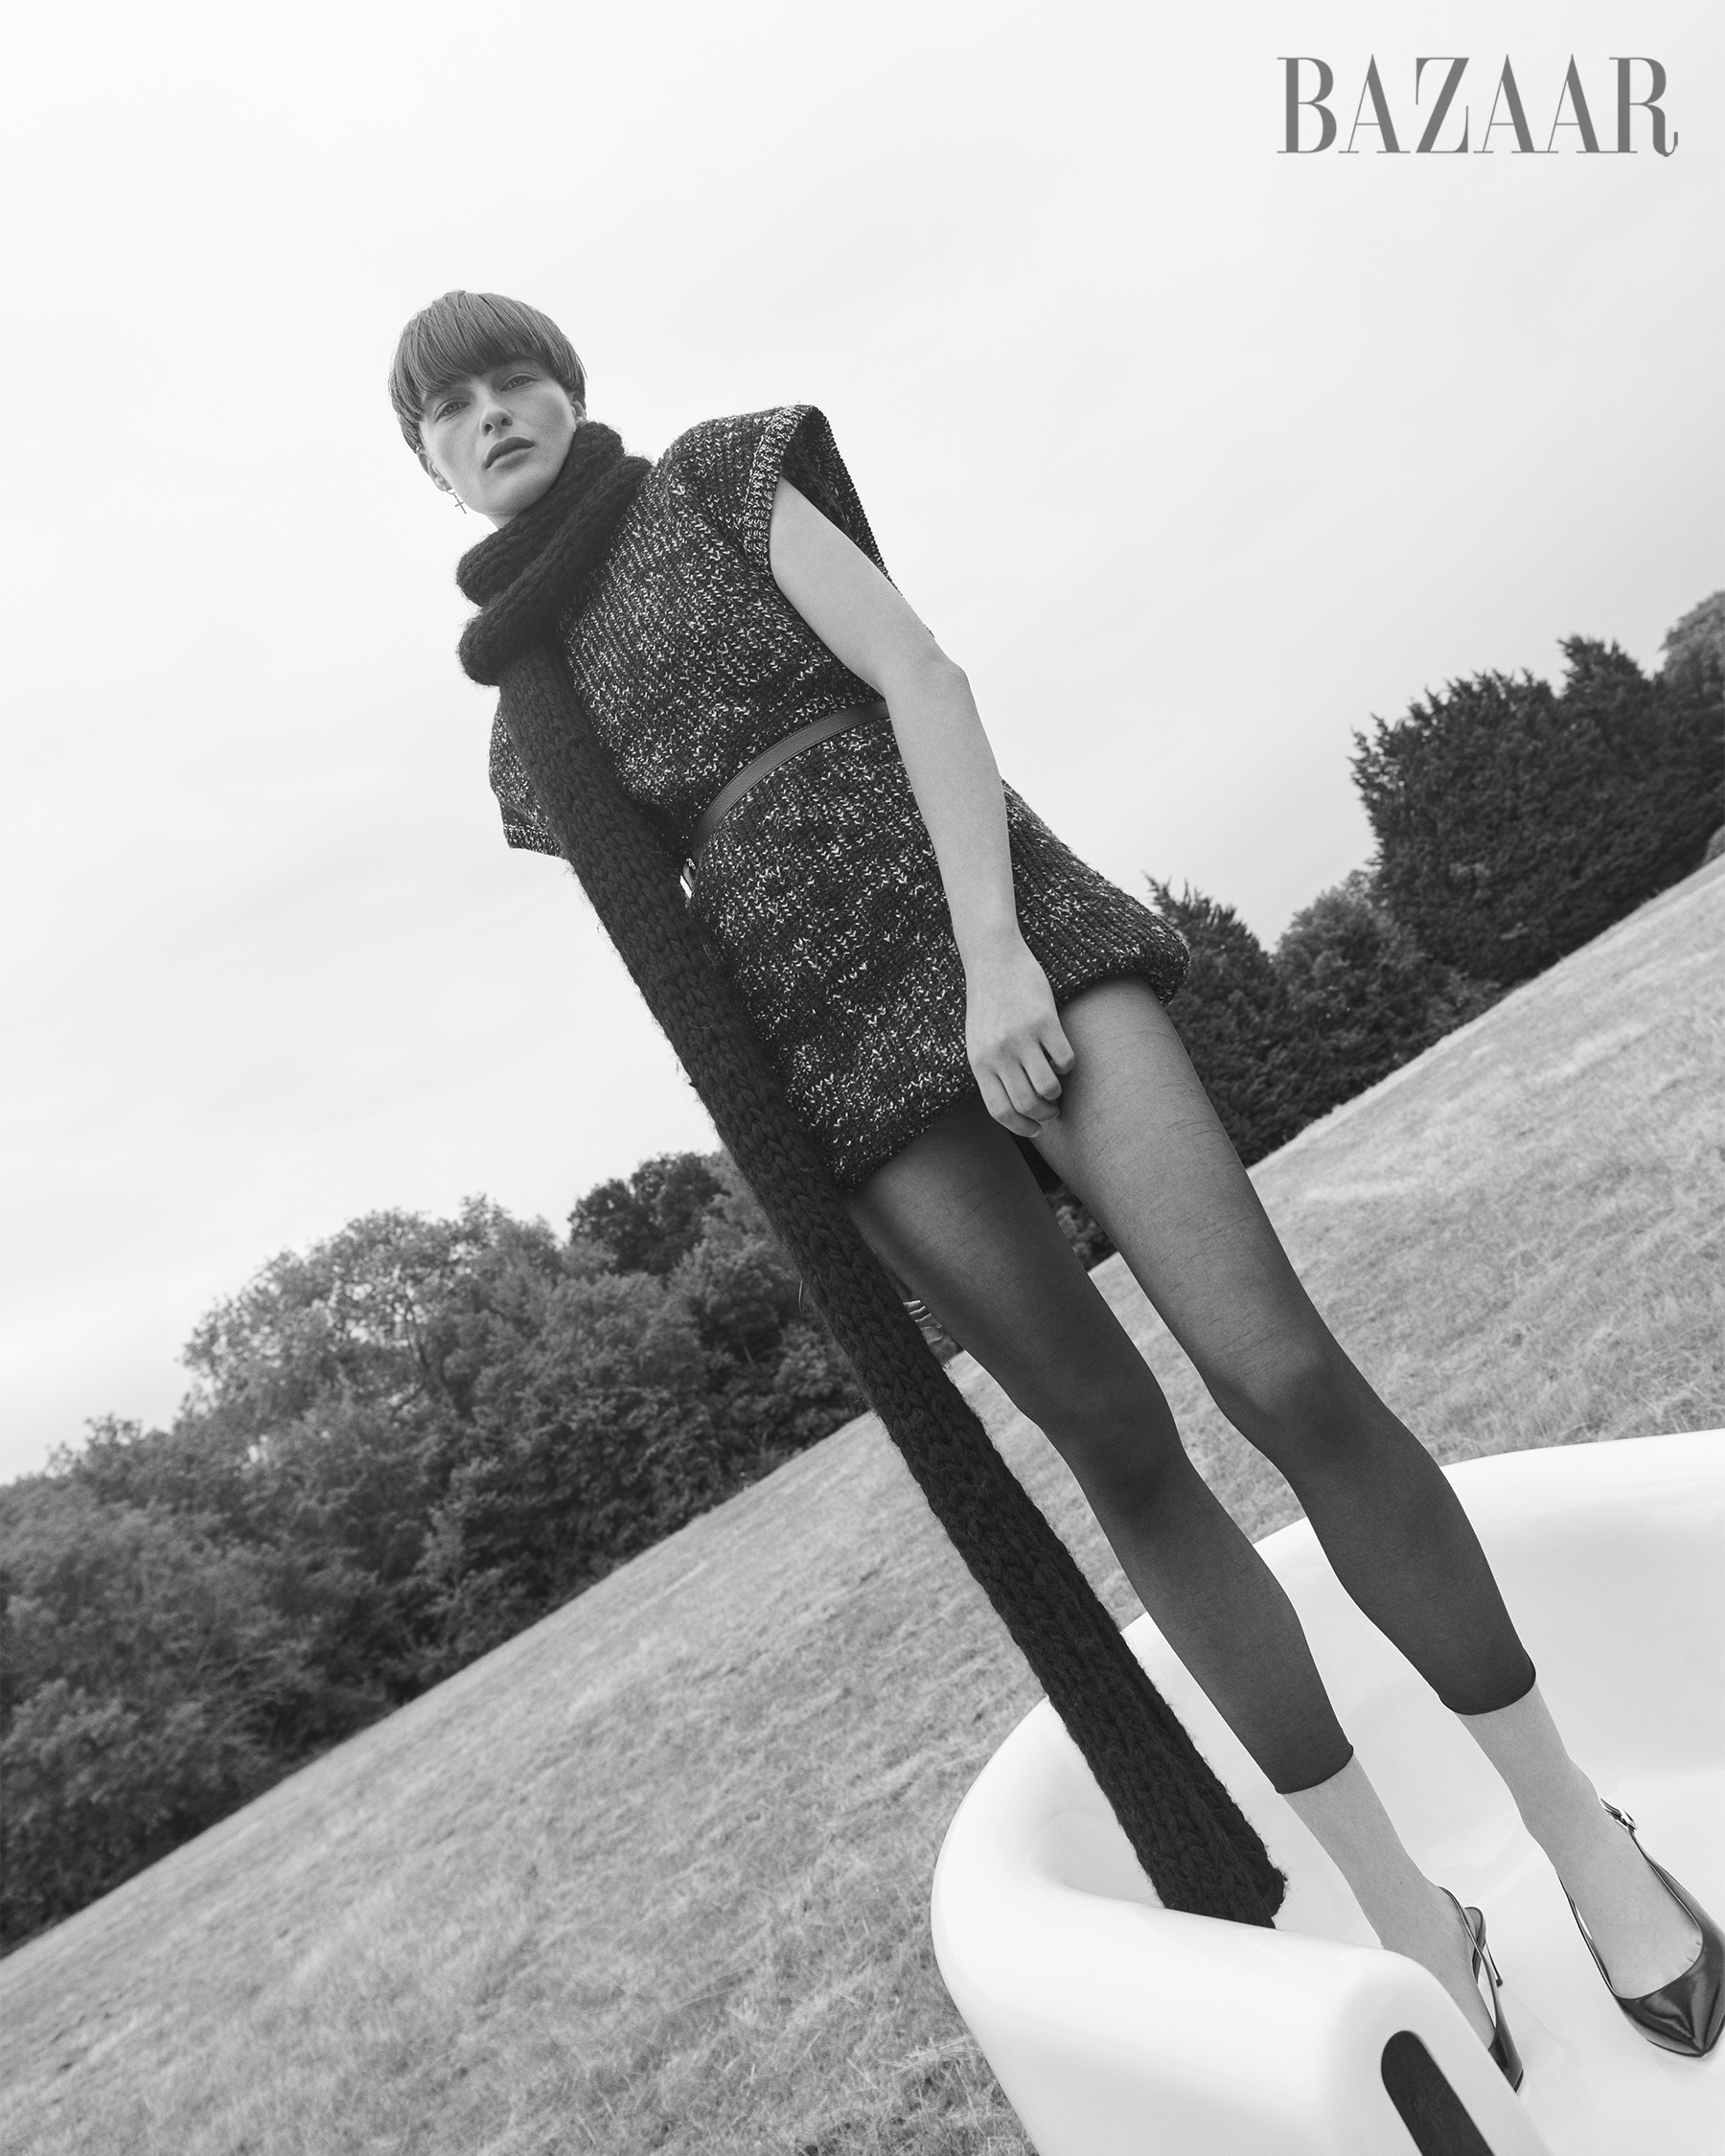 Campanha beneficente One Love ganha três modelos de biquínis - Harper's  Bazaar » Moda, beleza e estilo de vida em um só site